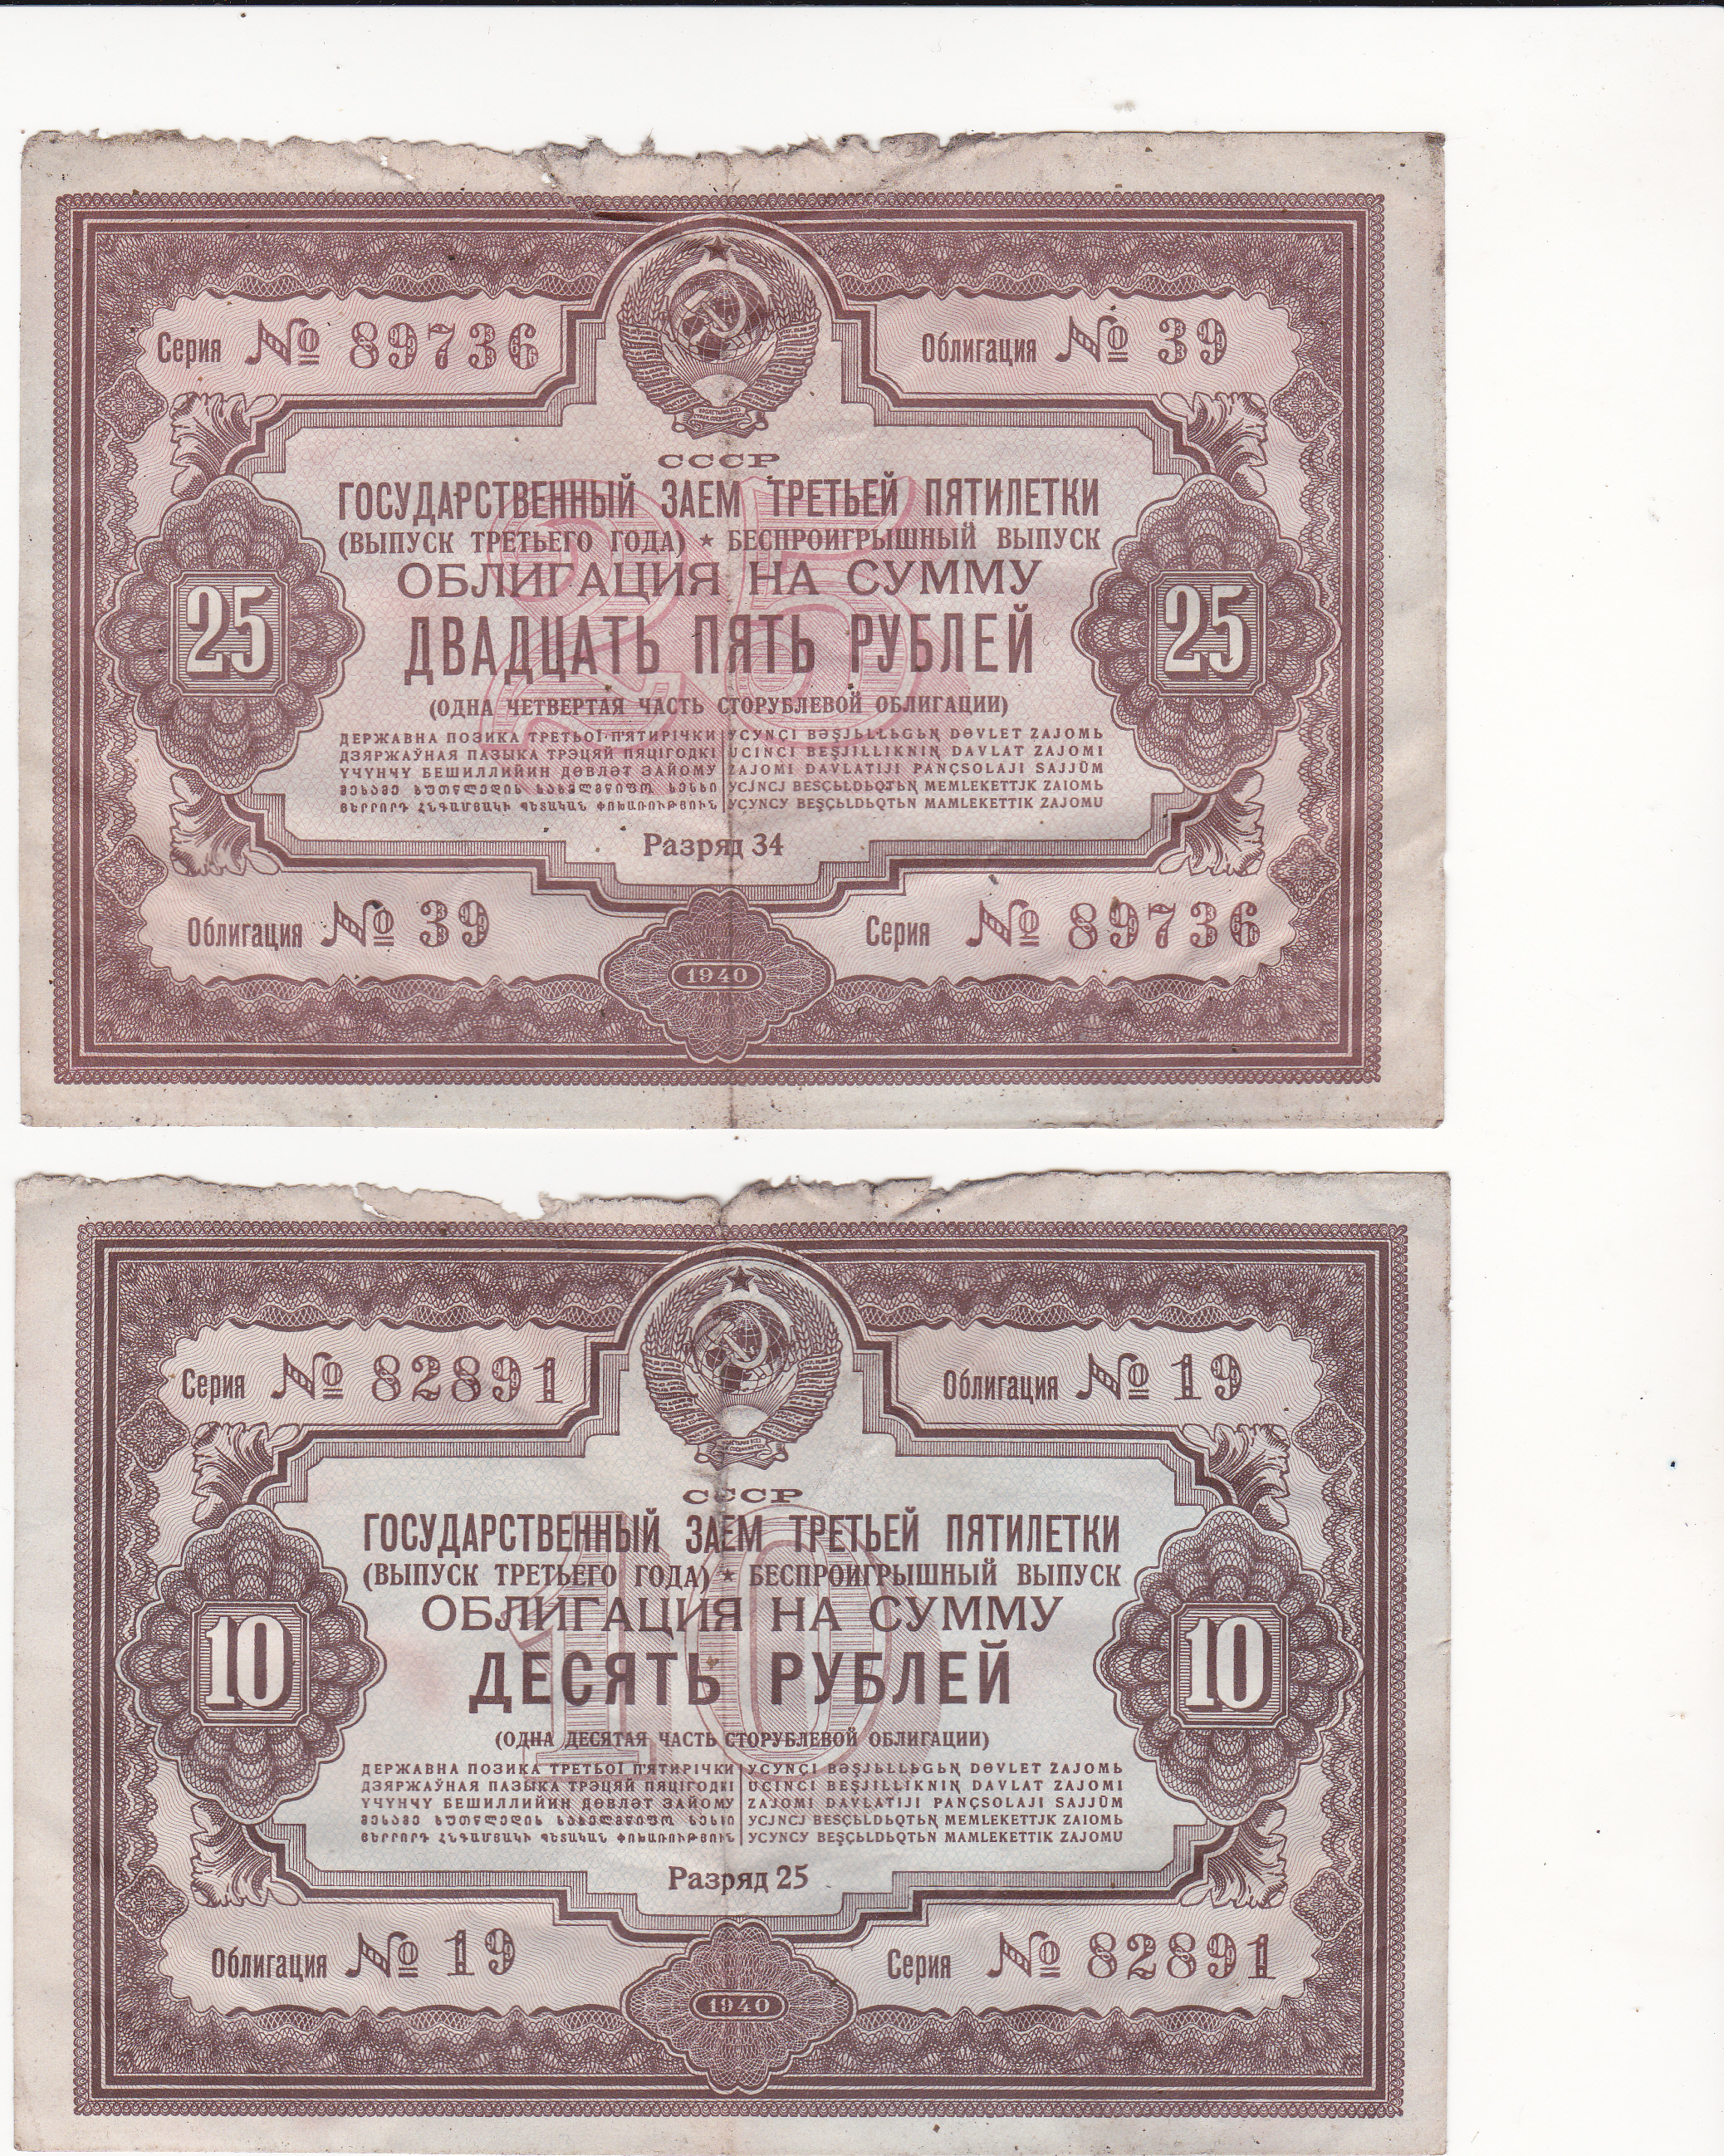 Бумажные 25 рублей 1940 года. Рубль 1940 года. Облигации 2 Пятилетки. СТО рублей 1940.